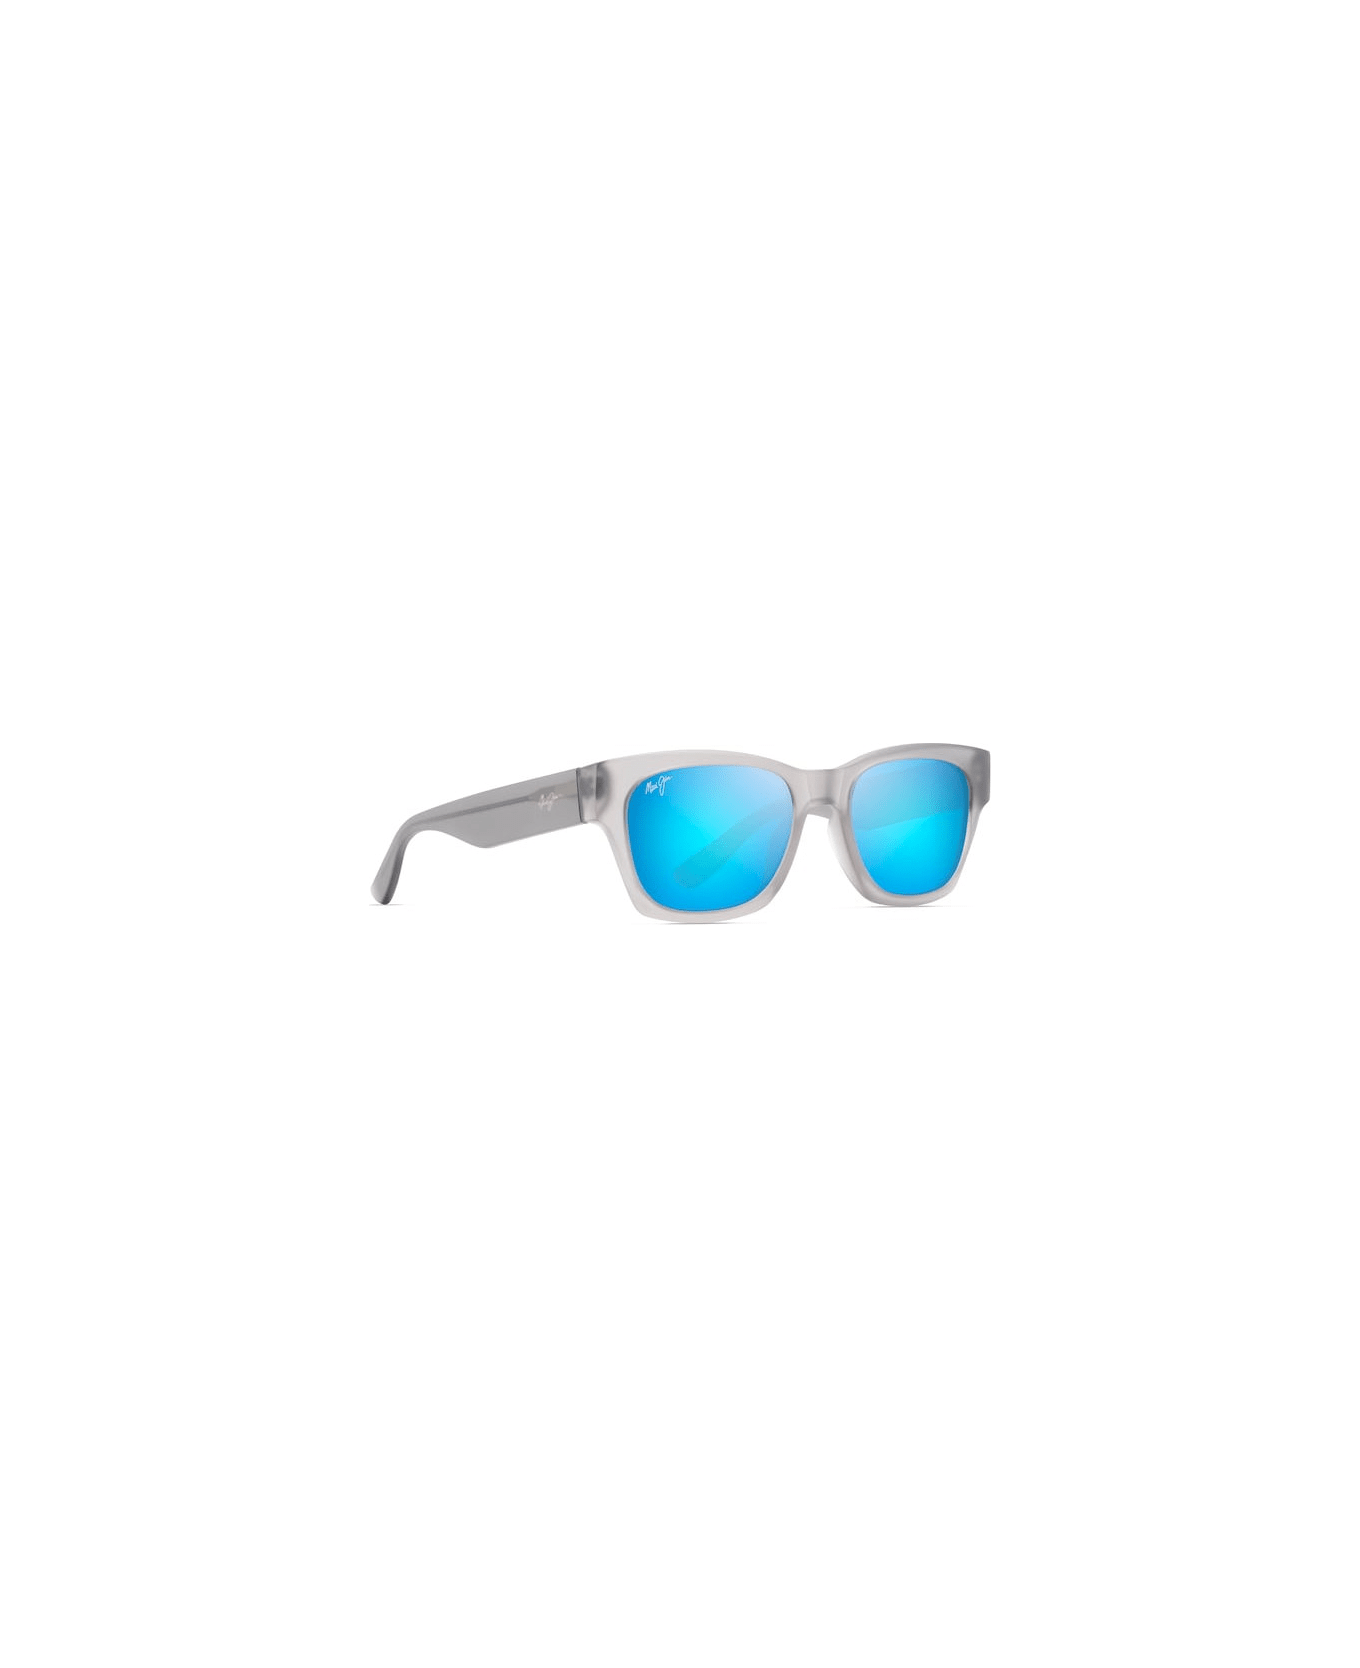 Maui Jim Valley Isle STG Sunglasses サングラス